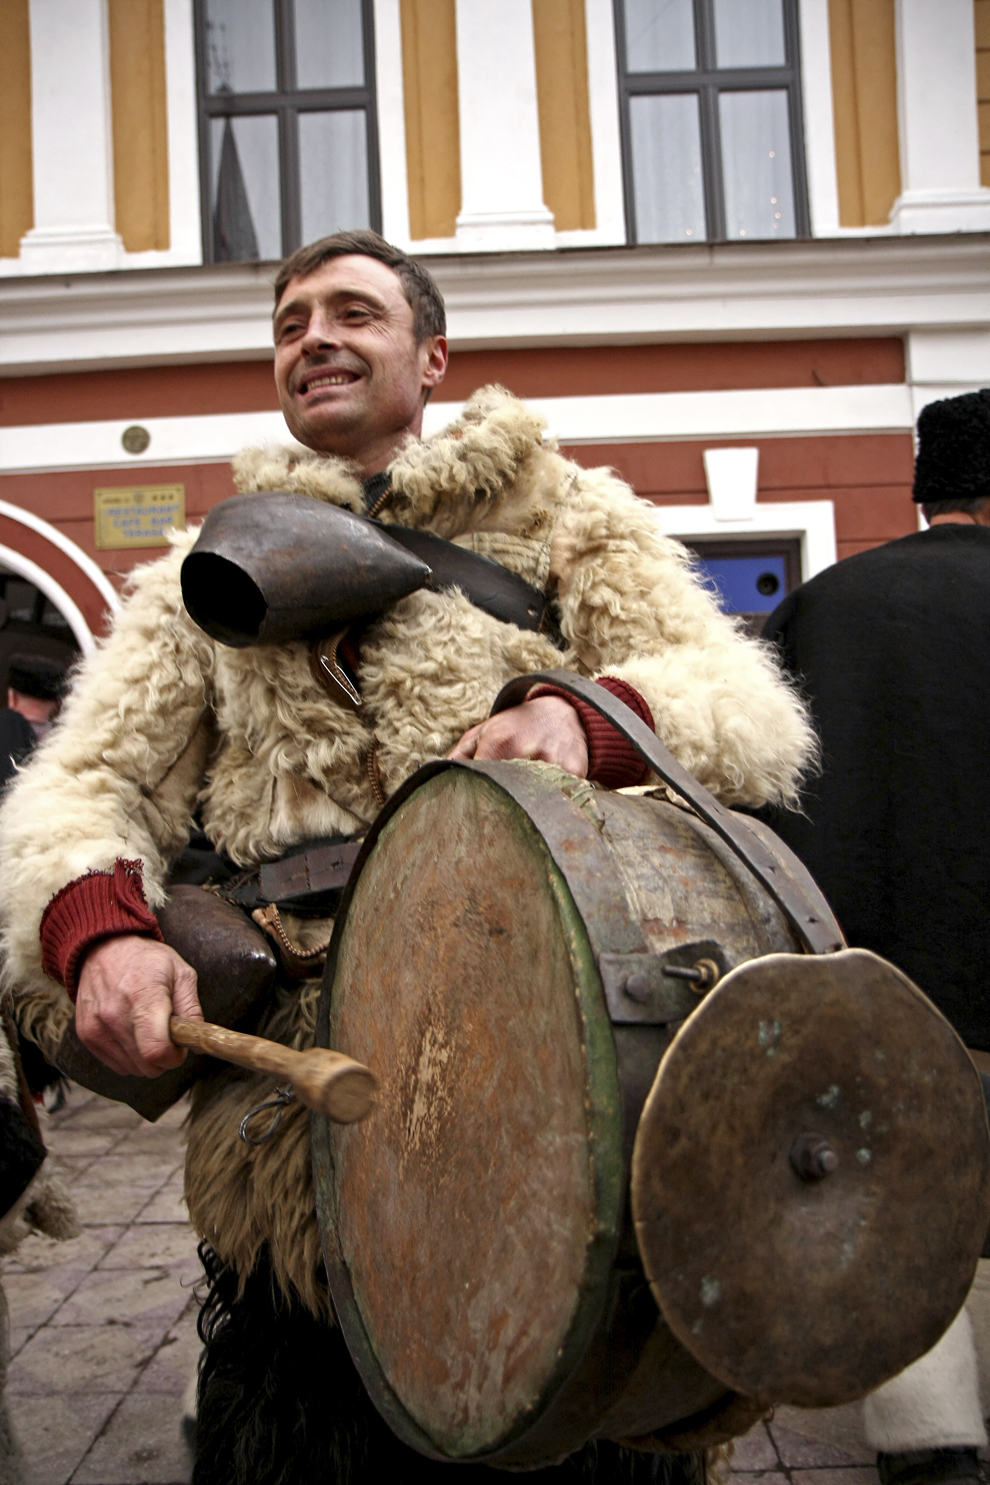 Un tânăr îmbrăcat în port tradiţional maramureşean, bate la tobă cu ocazia Festivalului de Datini Marmaţia 2009, la Sighetu Marmaţiei, duminică, 27 decembrie 2009.